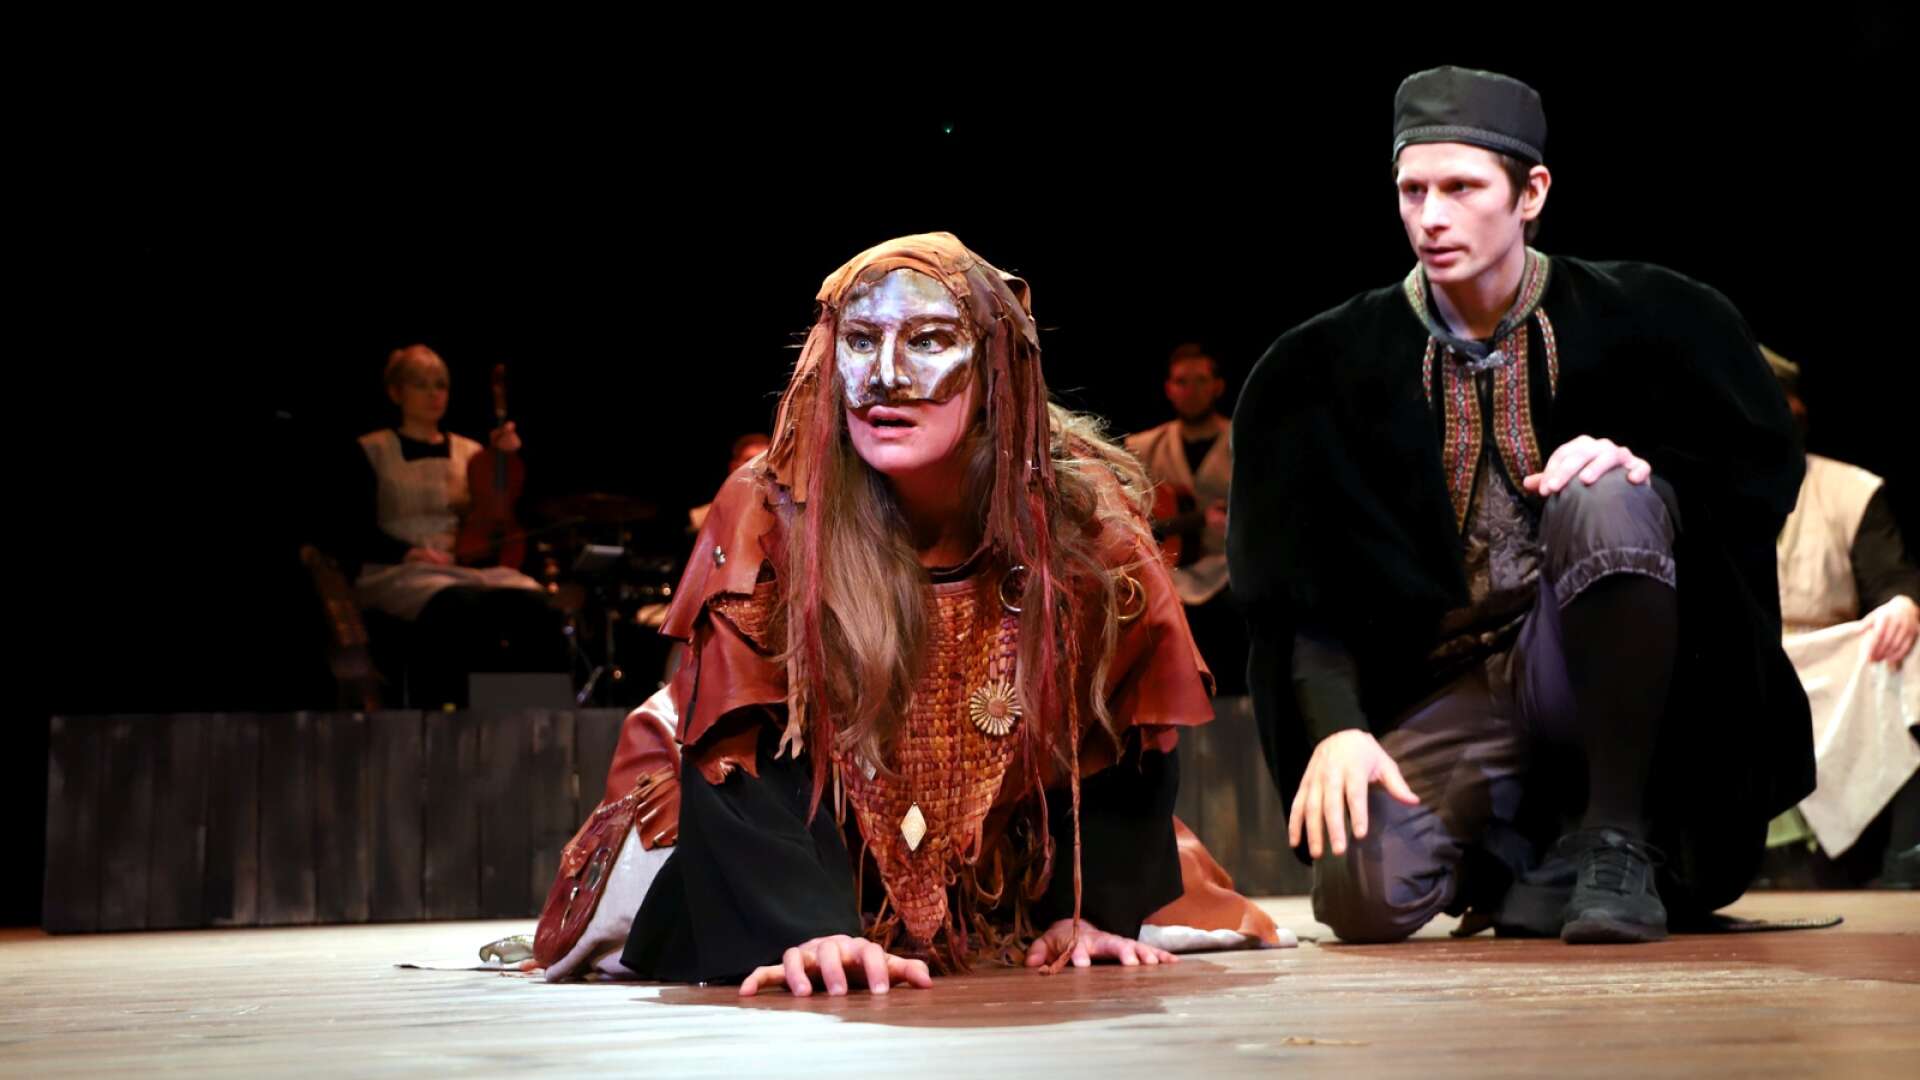 Västanå musik och teater spelar i vinter ”I domarens skepnad”, ett laddat drama om häxprocesser i 1600-talets värmländska finnbygder.